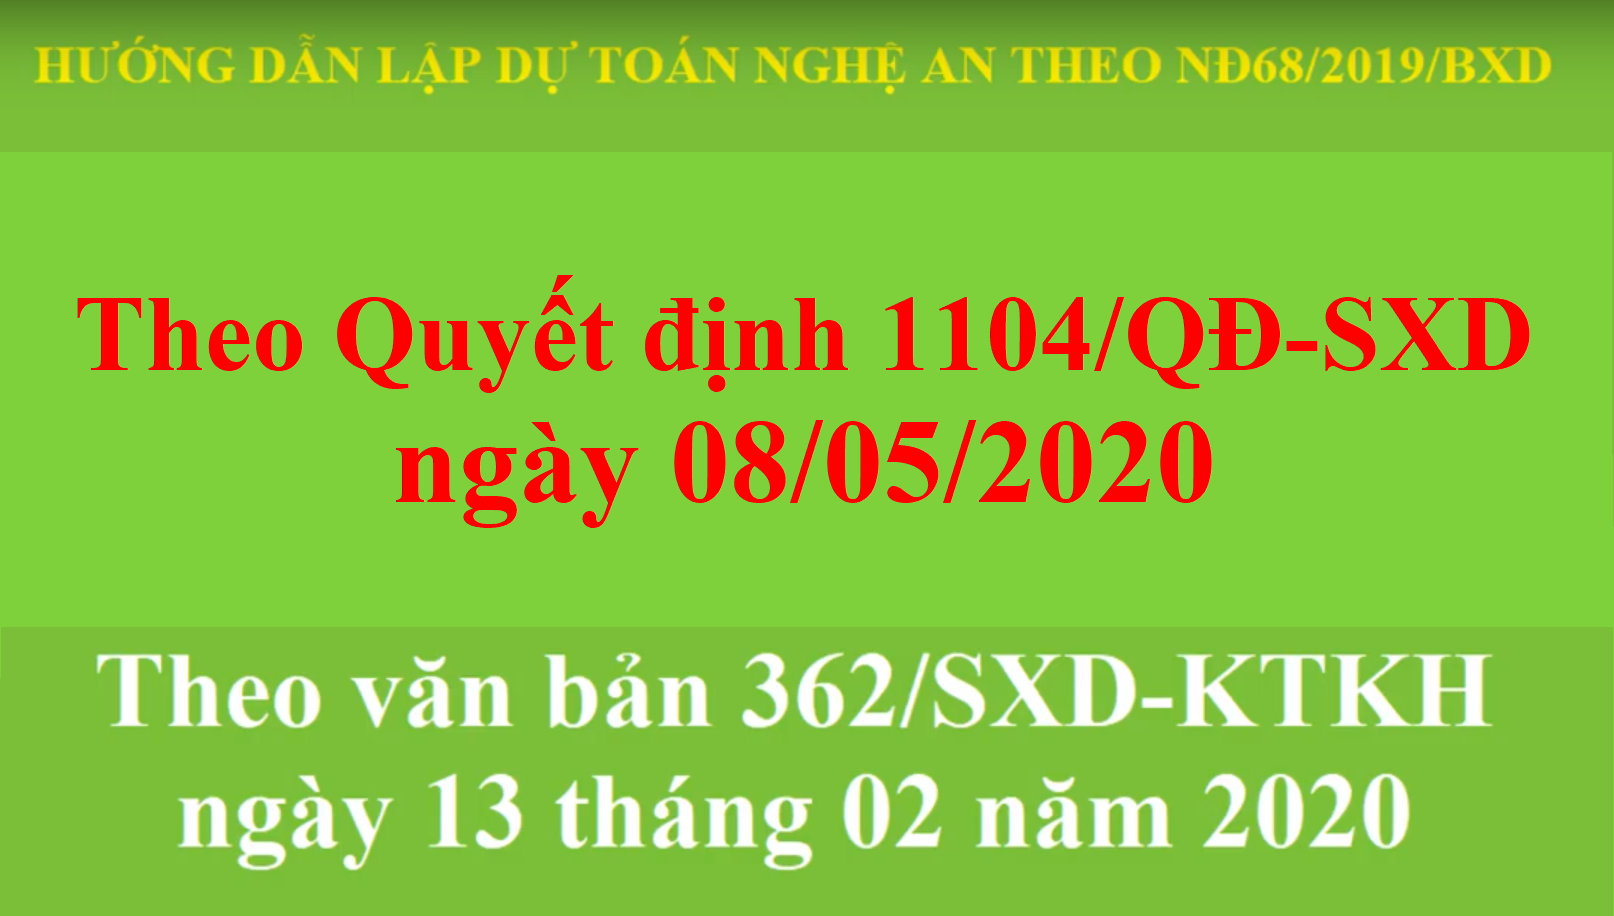 Hướng dẫn lập dự toán tỉnh Nghệ An theo Quyết định 1104/QĐ-SXD ngày 8/5/2020 và 362/SXD-KTKH